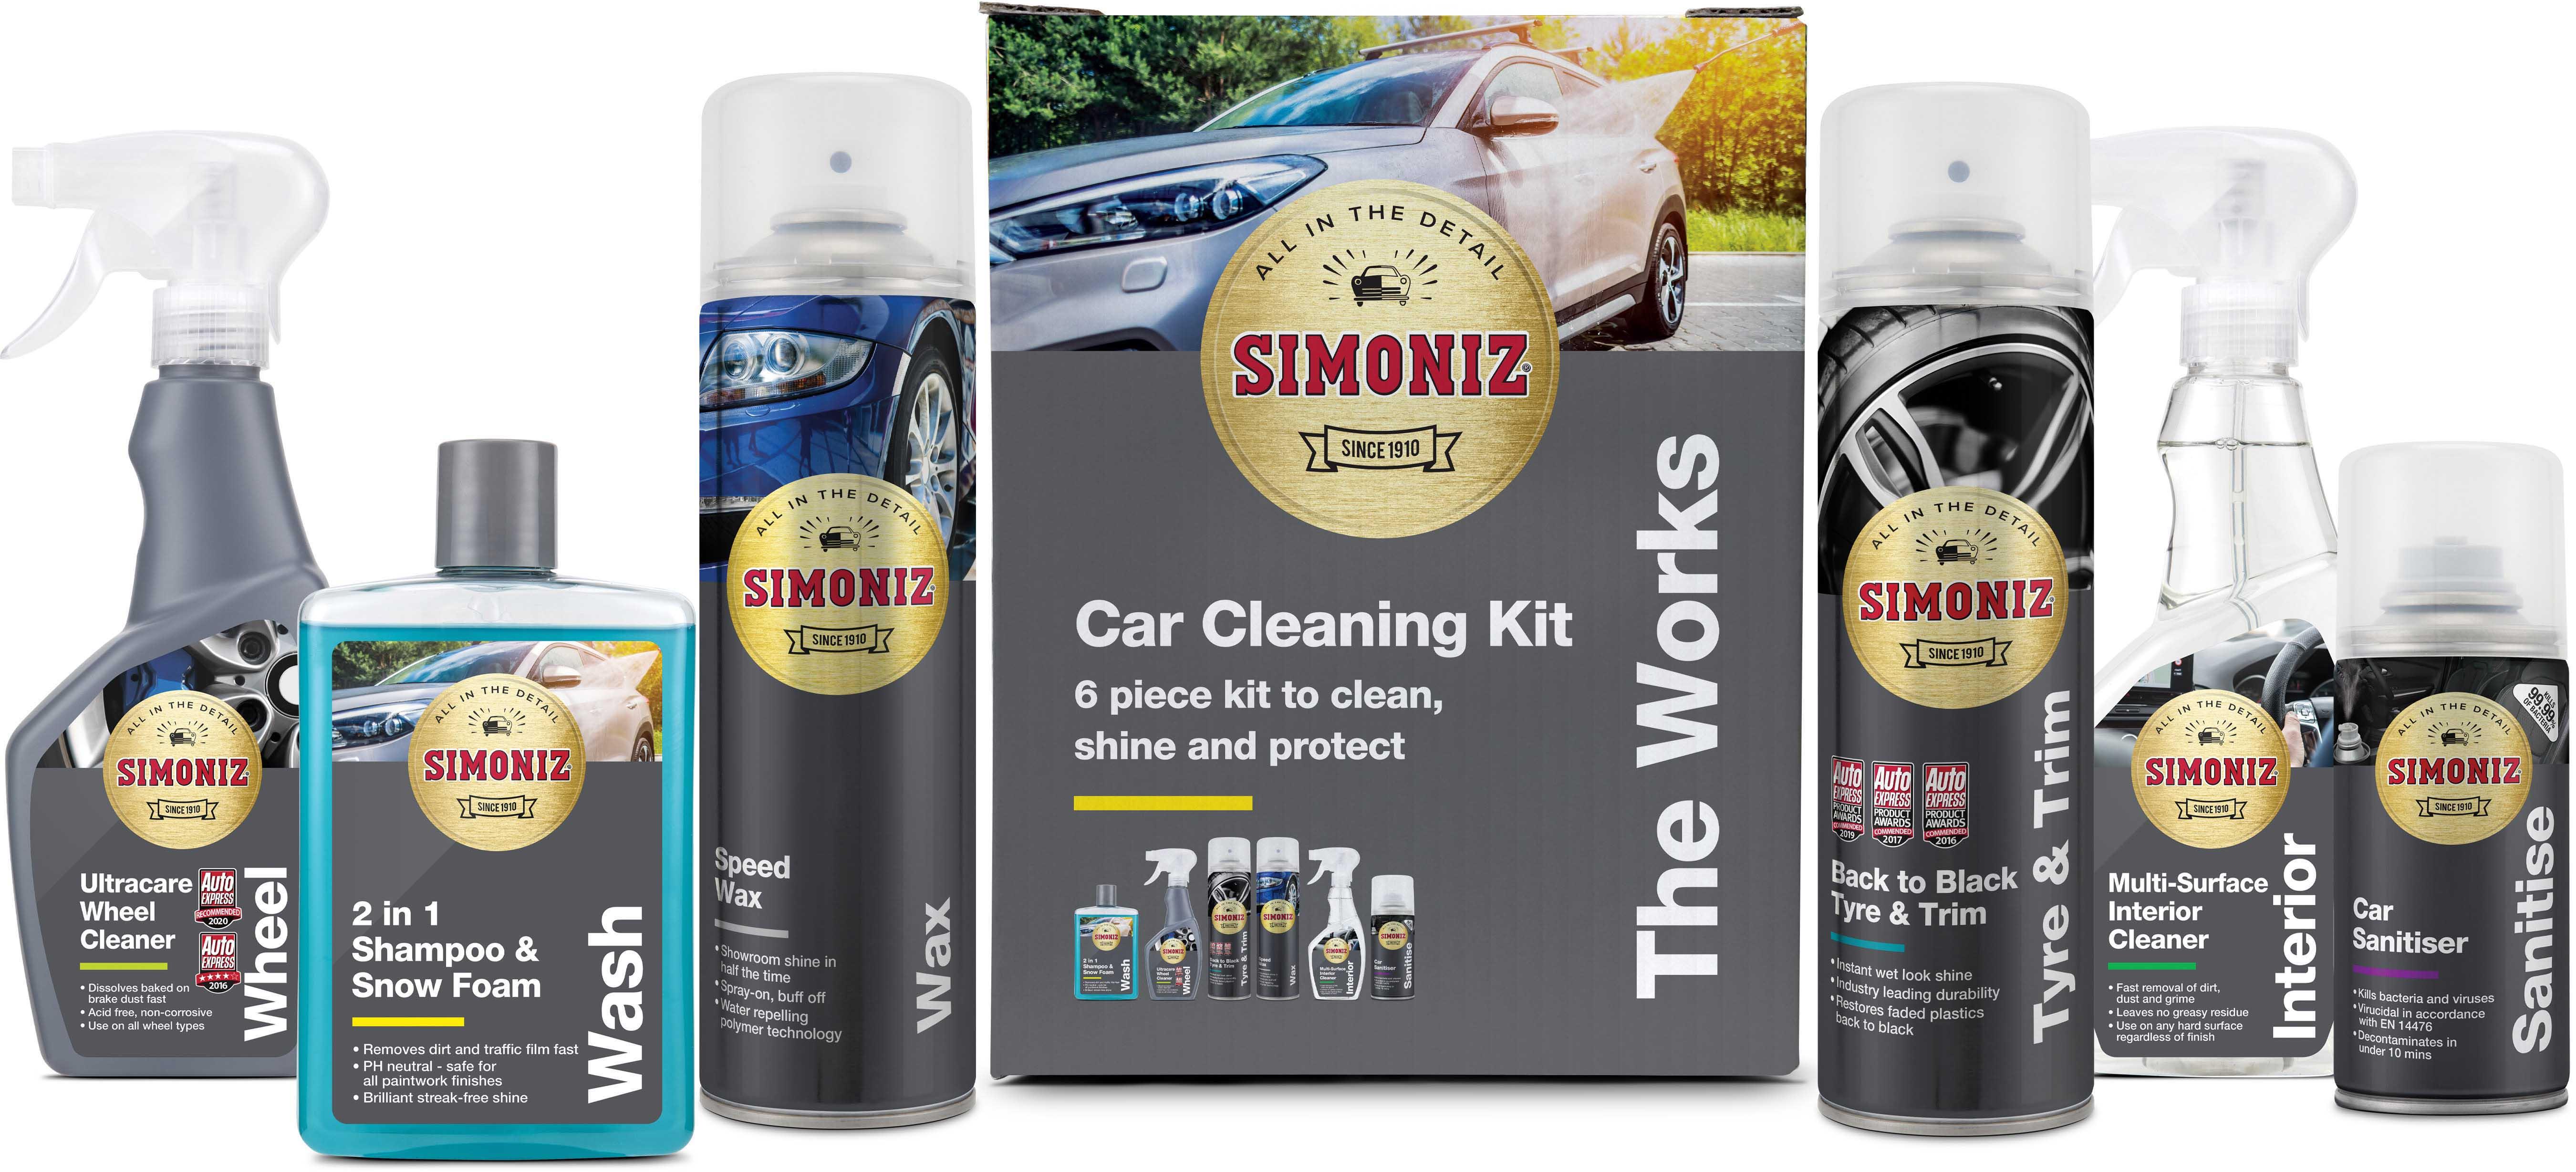 Car Cleaning Kits & Detailing Kits